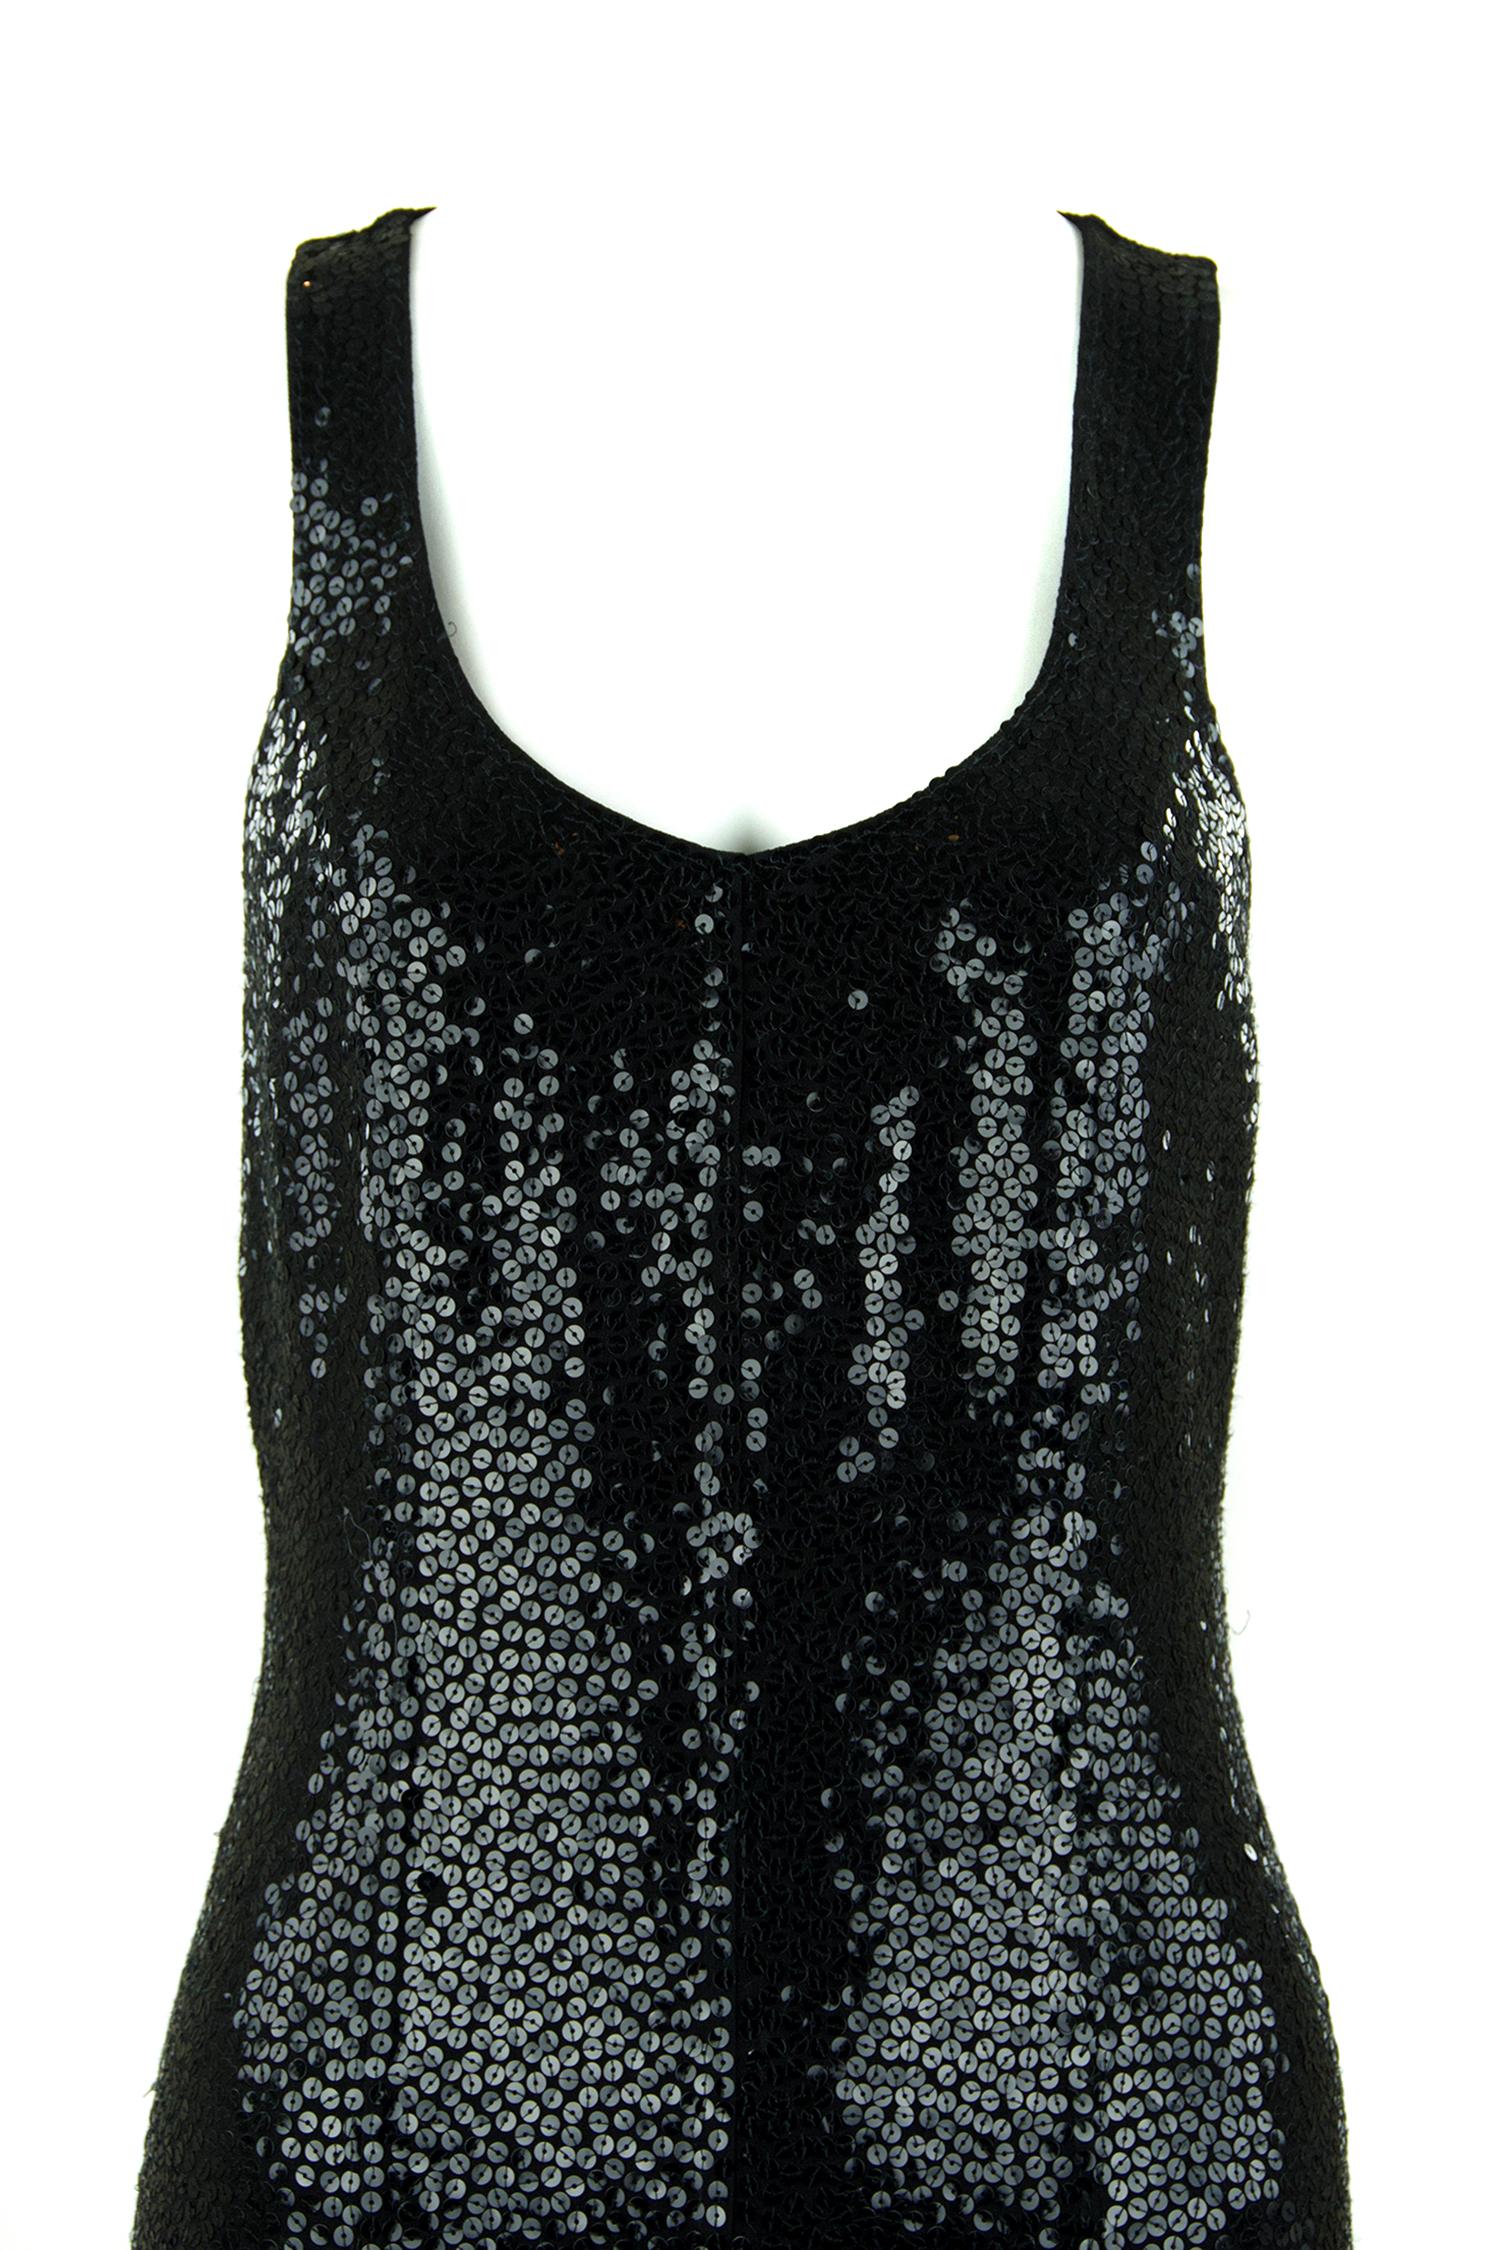 Women's Michael Kors Black Sequin Jumpsuit - Size 2 For Sale